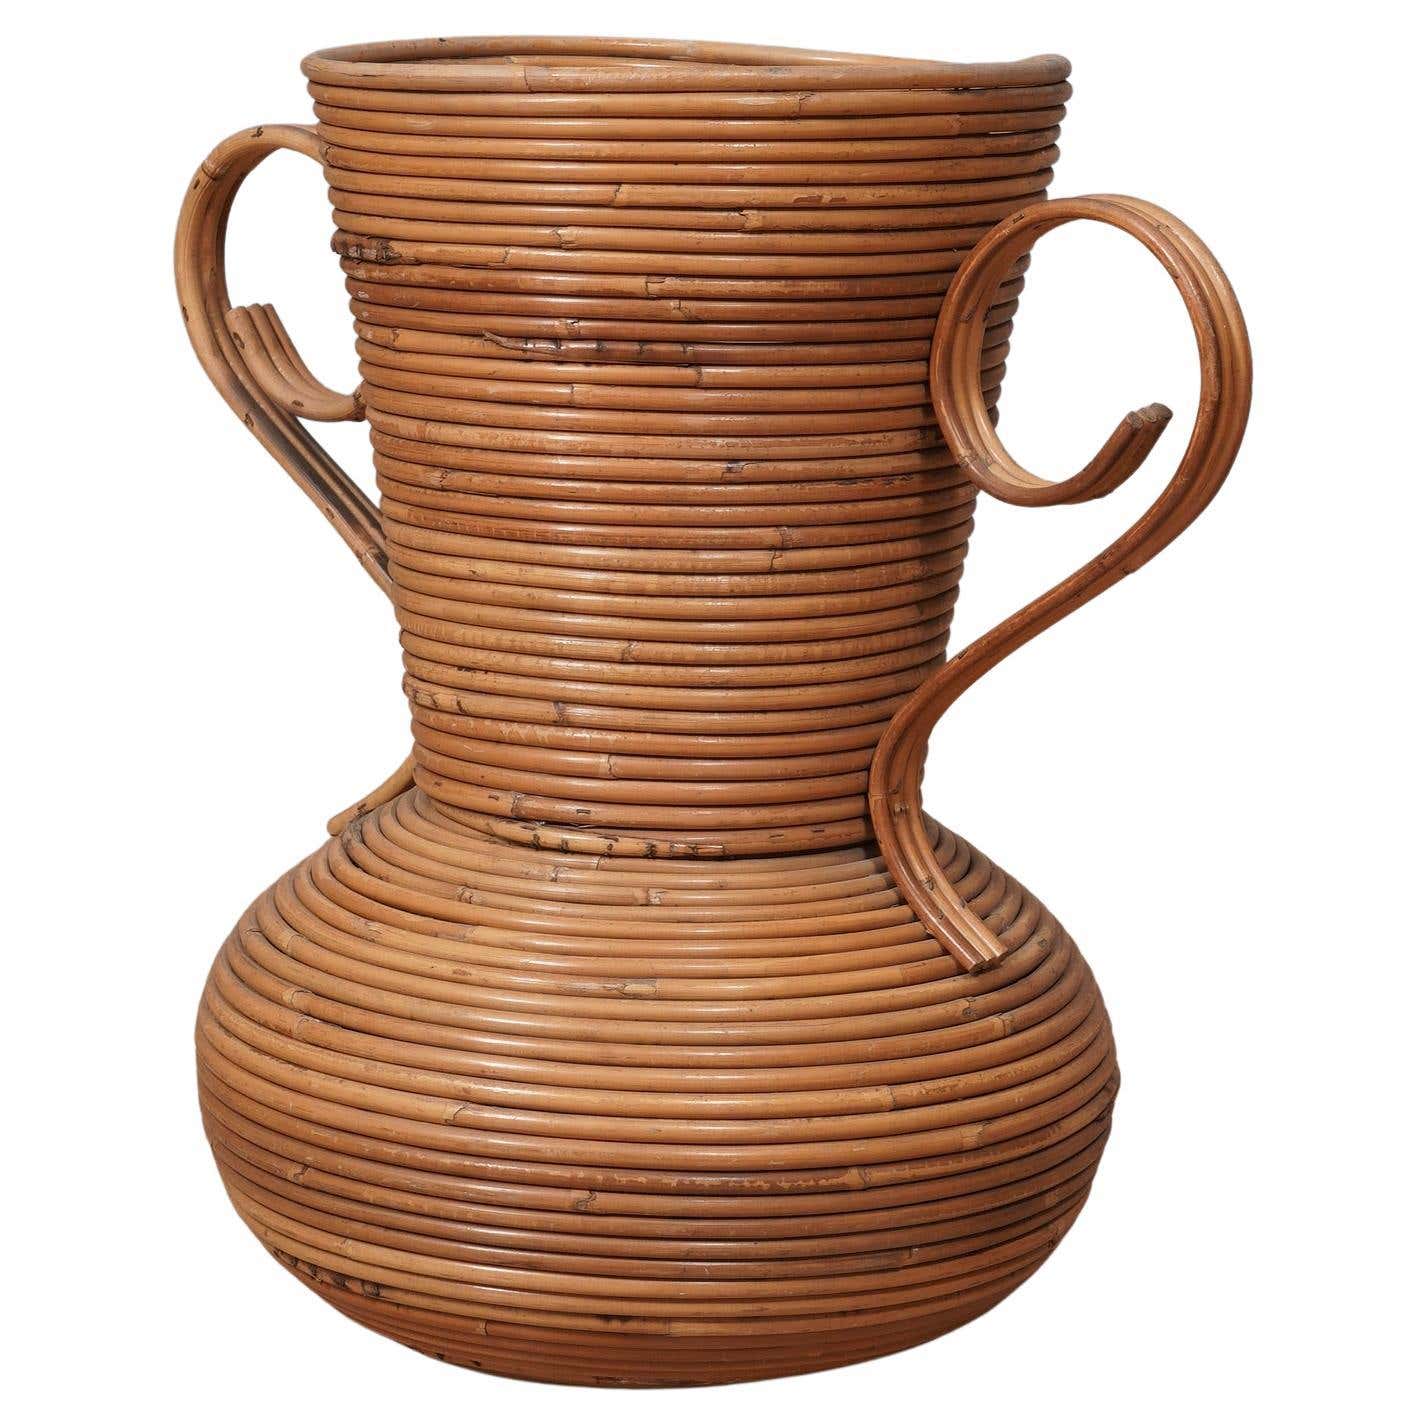 Vivai Del Sud Rattan Warm Honey Color Italy Amphora Vase, 1960